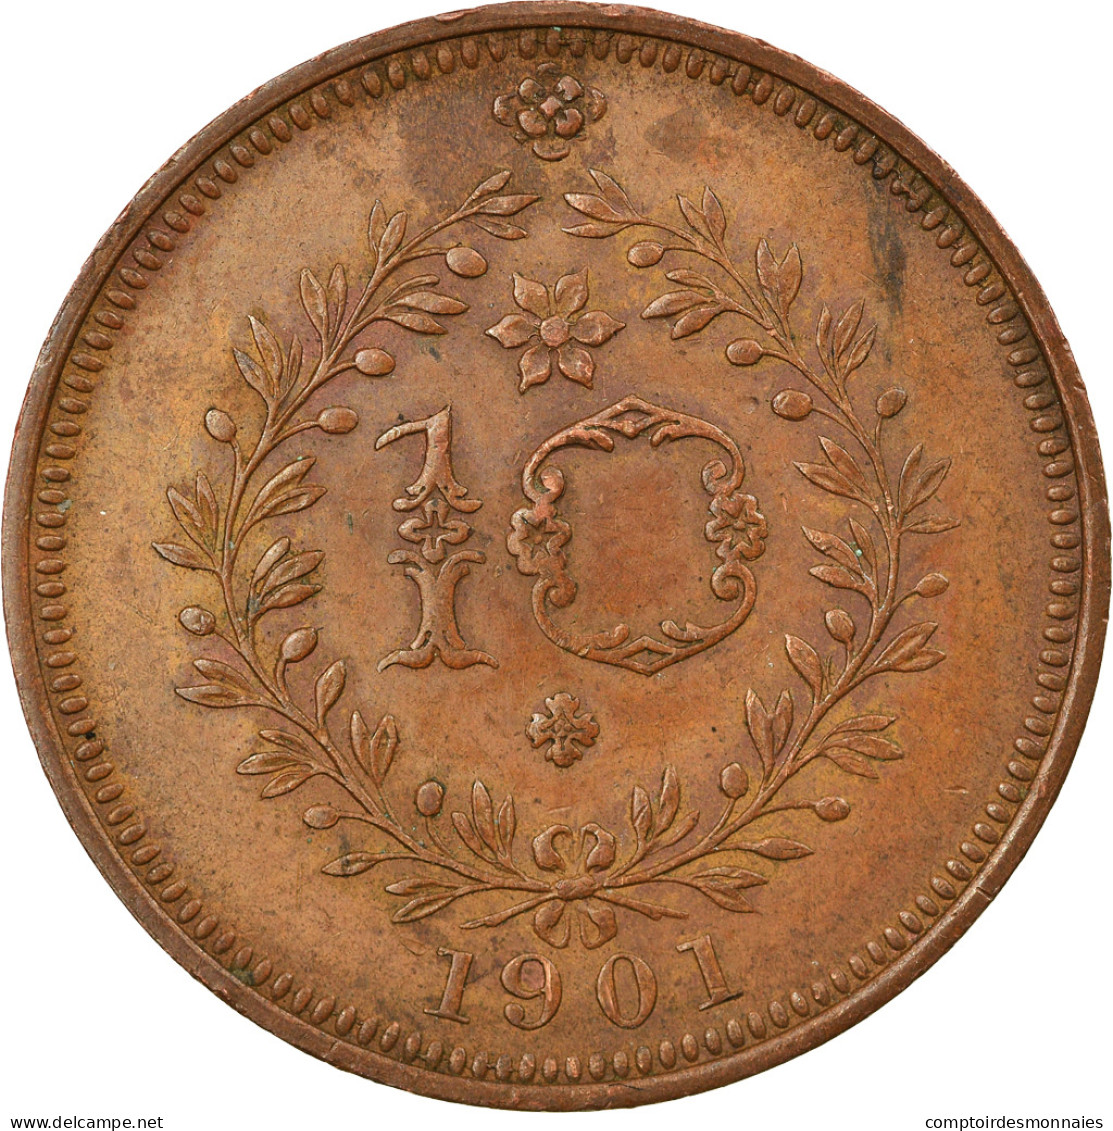 Monnaie, Azores, 10 Reis, 1901, SUP, Cuivre, KM:17 - Açores